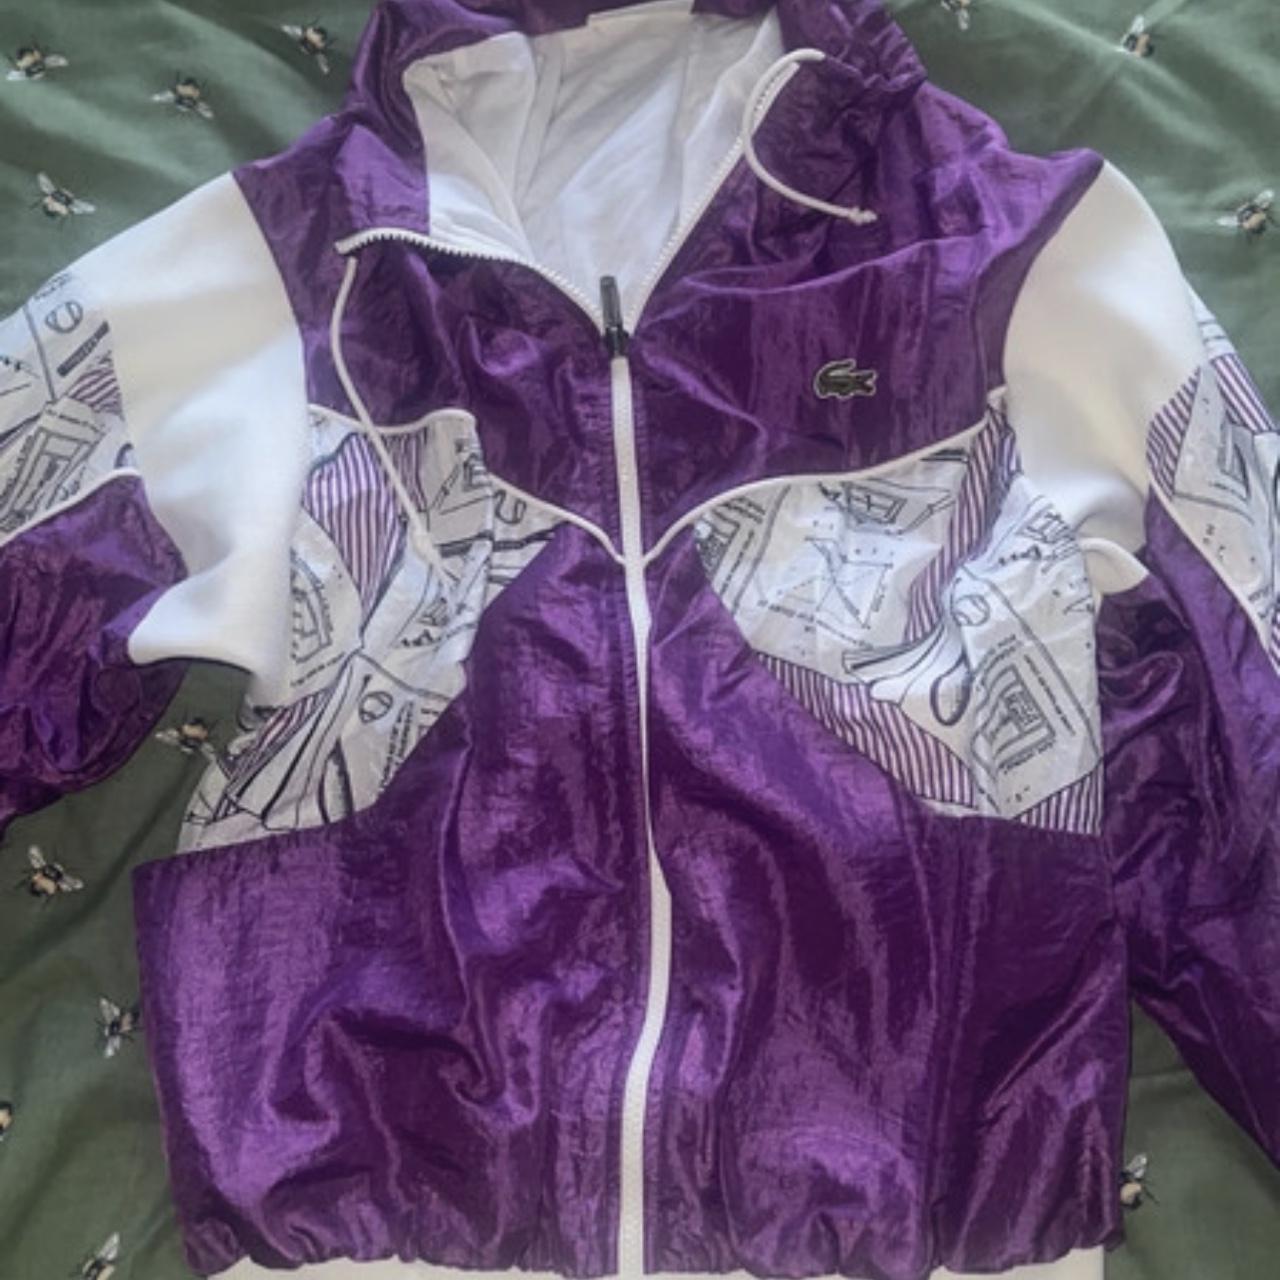 Vintage Lacoste shell jacket. Super comfy and... - Depop